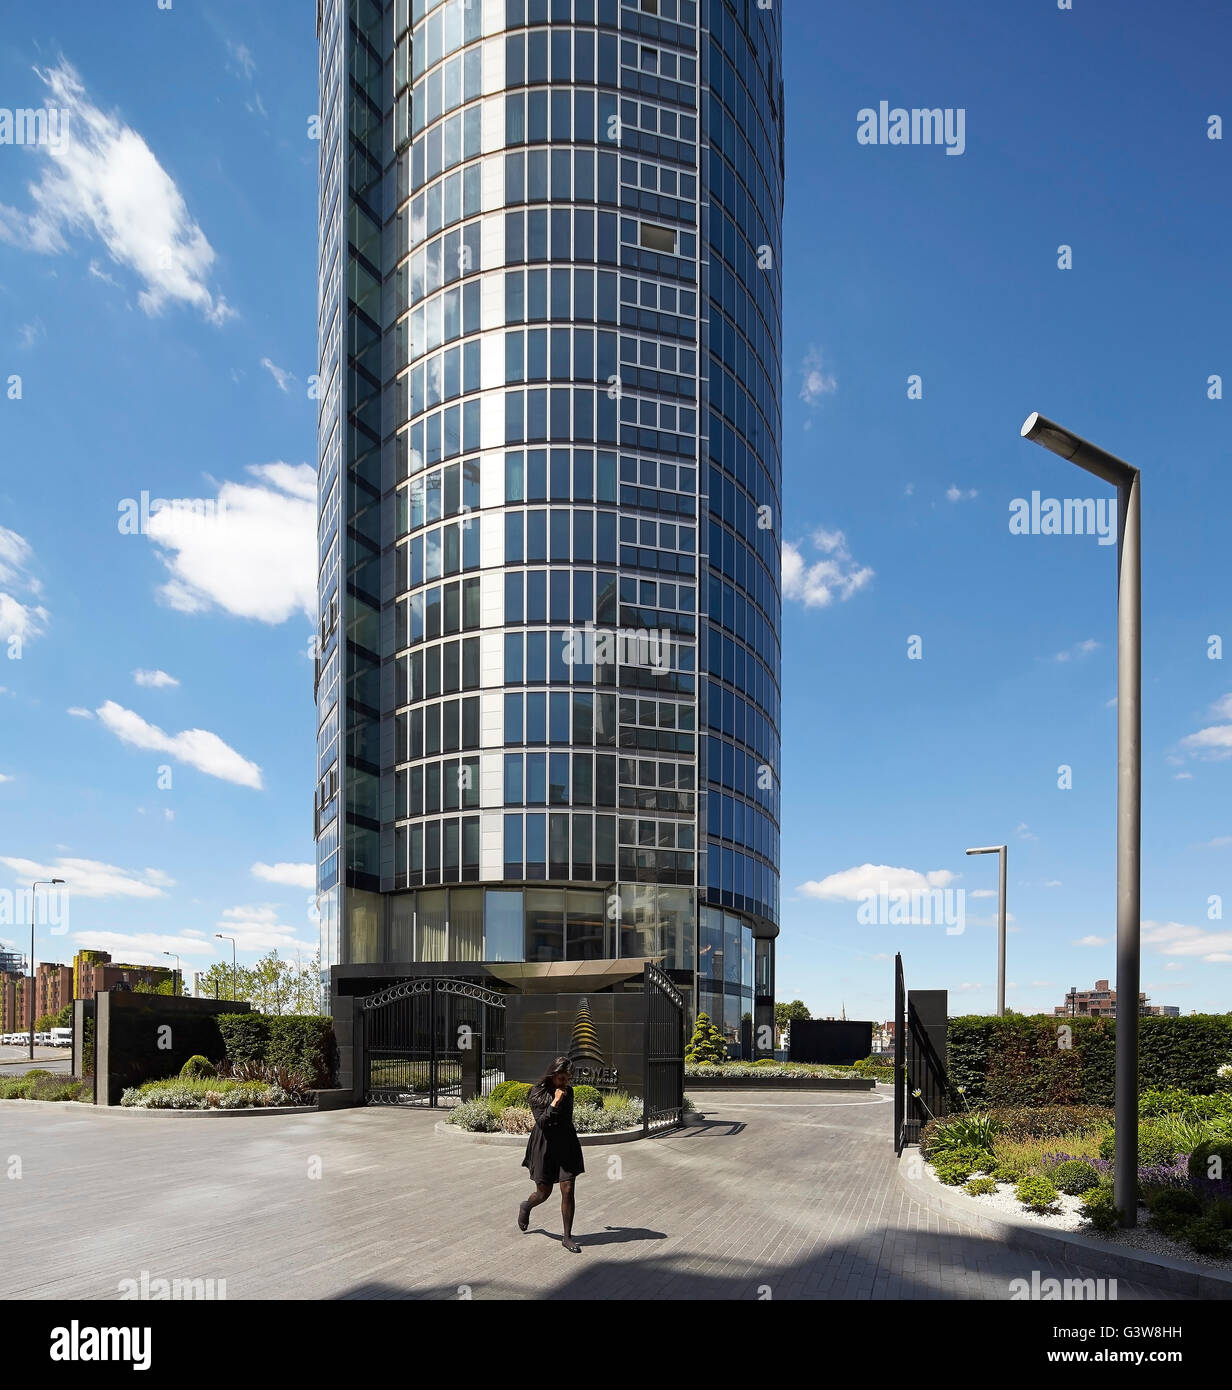 Eingangstor zur Wohnanlage. St George Wharf Tower, London, Vereinigtes Königreich. Architekt: Broadway Malyan Limited, 2014. Stockfoto